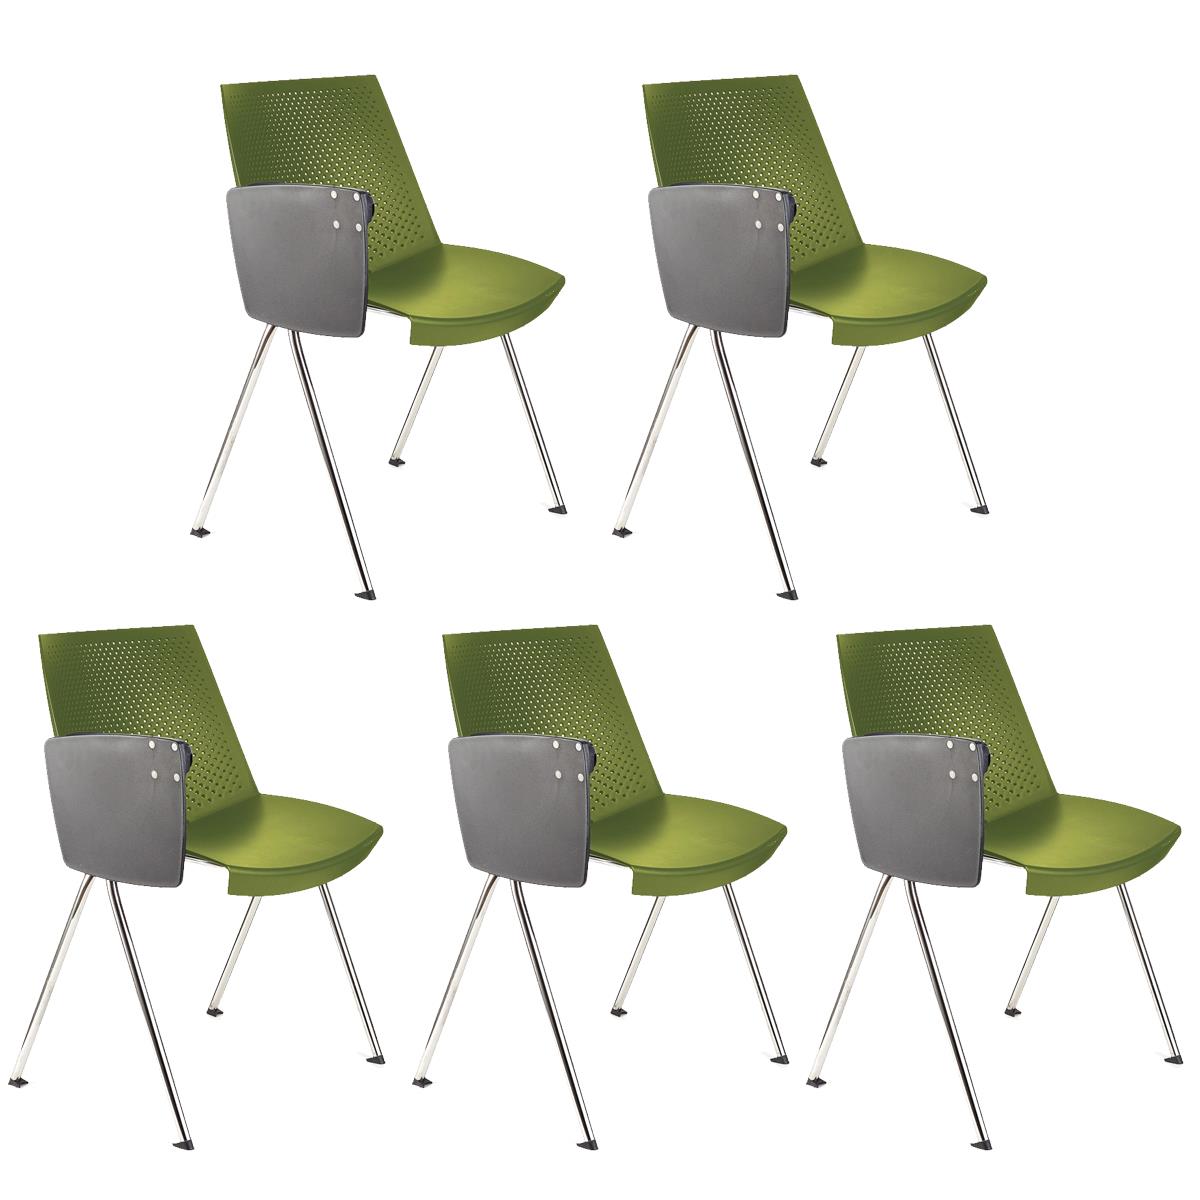 Lote de 5 sillas de Confidente ENZO CON PALA, Cómoda y Práctica, Apilable, Color Verde